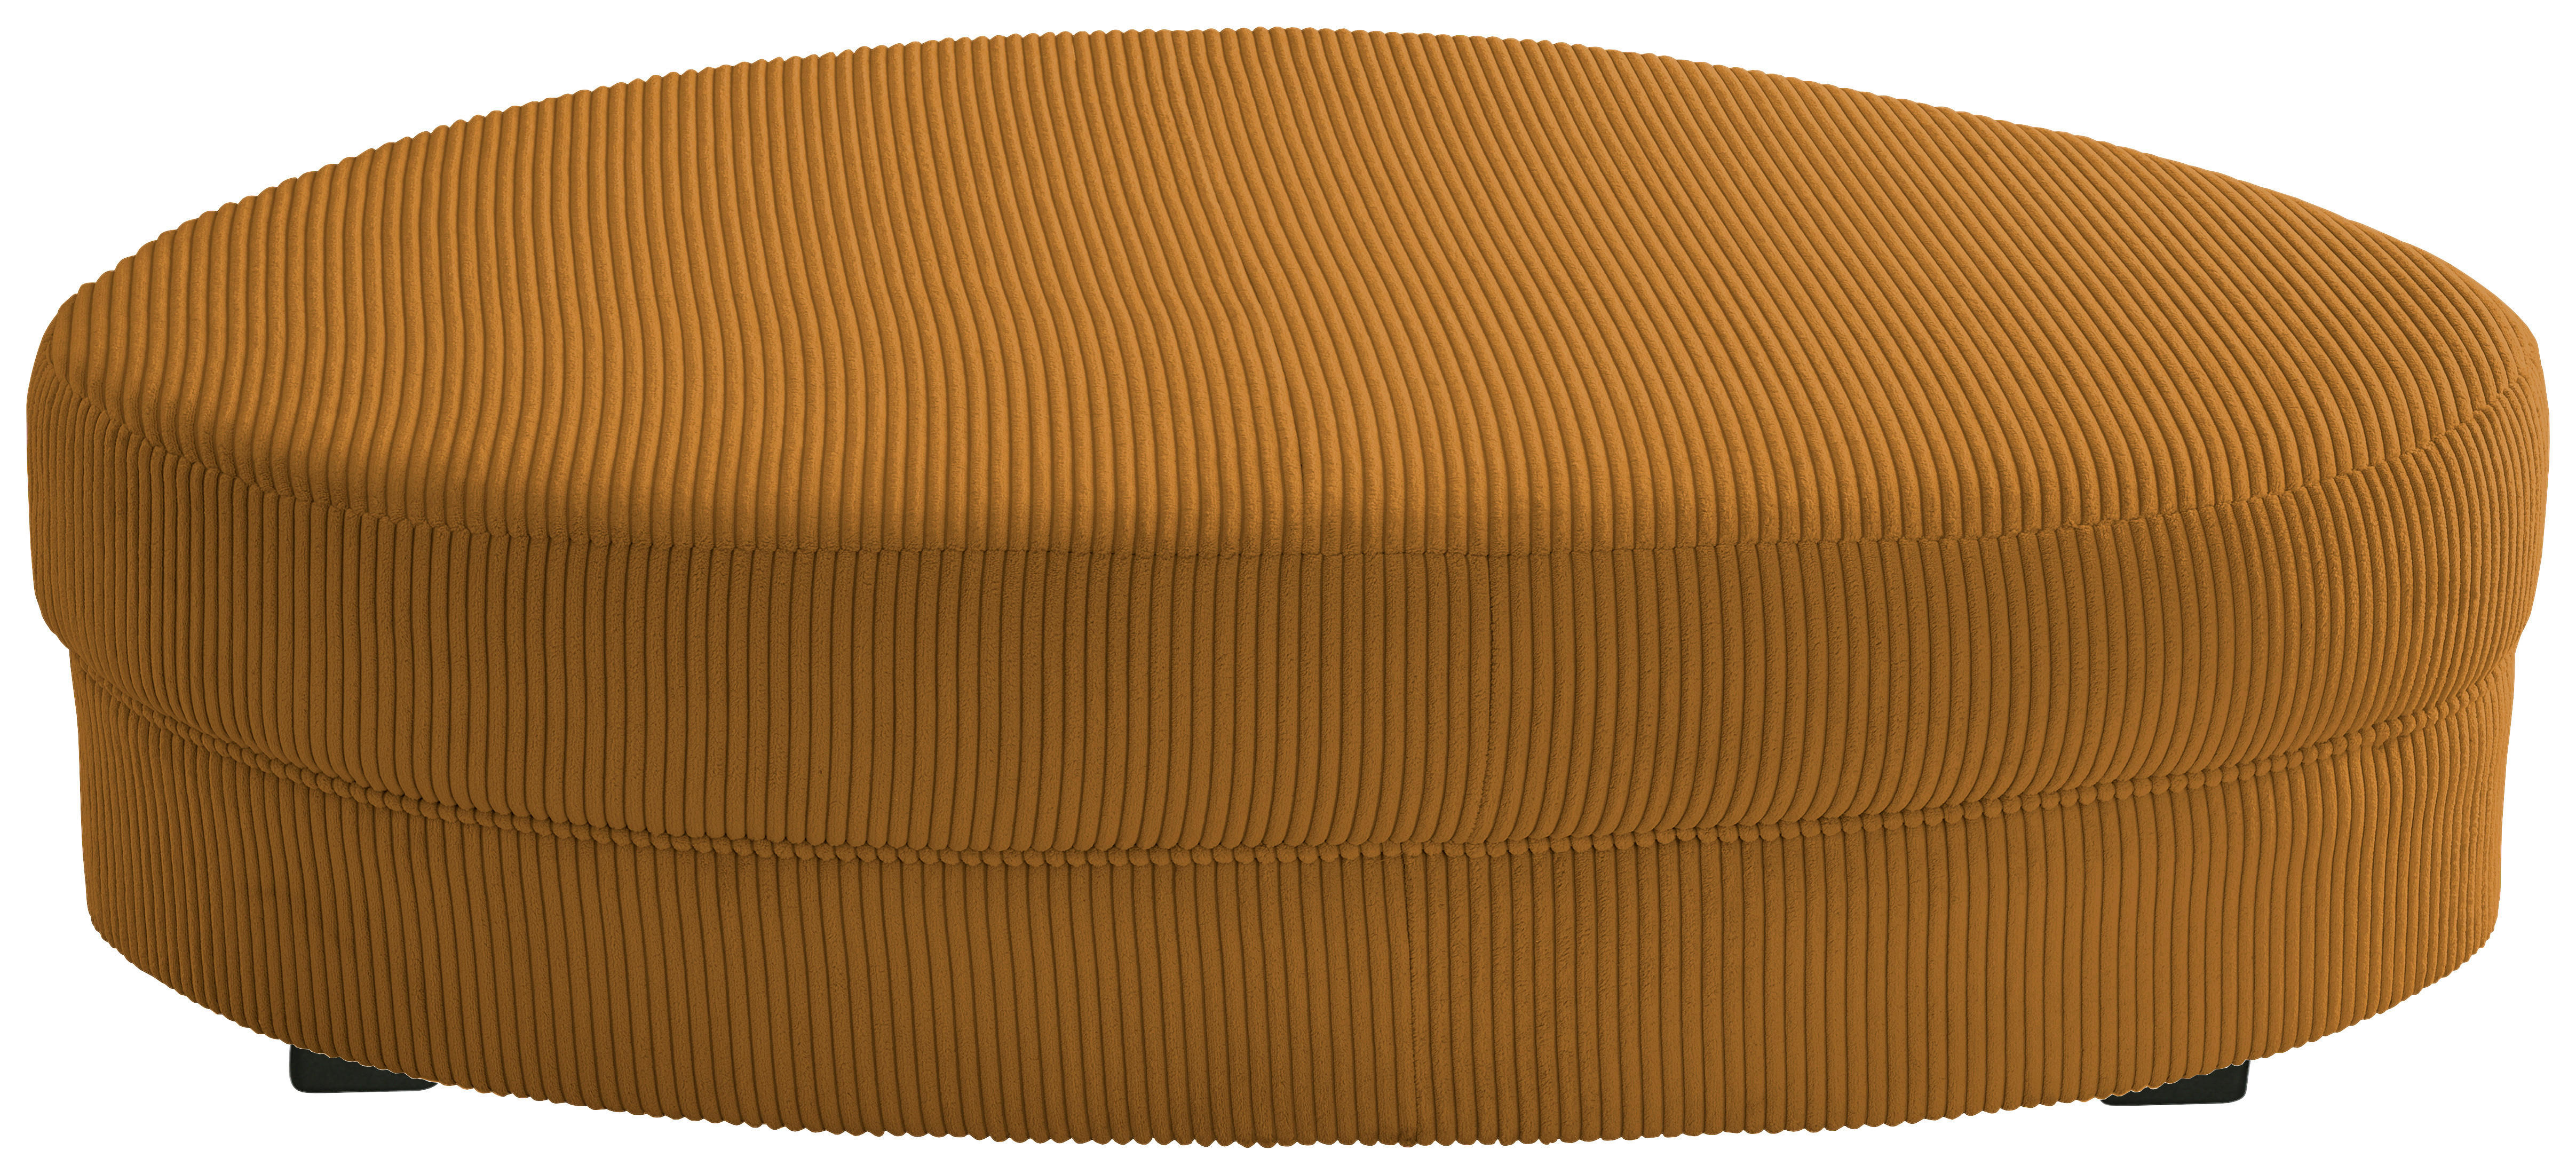 HOCKER in Textil Goldfarben  - Goldfarben/Schwarz, Design, Kunststoff/Textil (150/38/96cm) - Livetastic